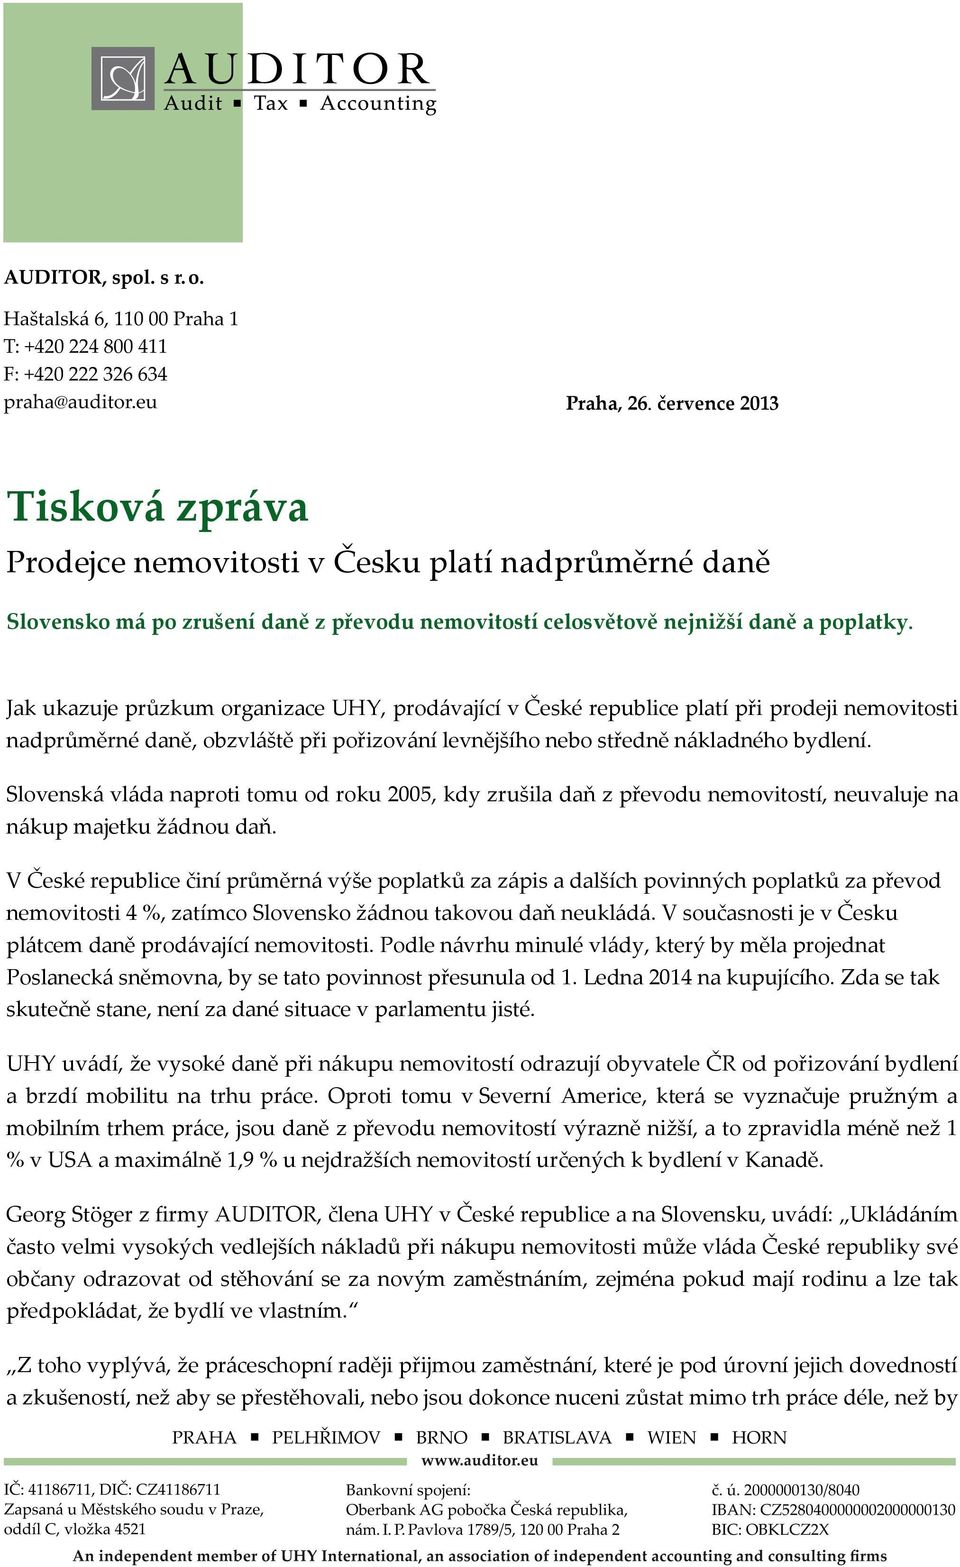 Slovenská vláda naproti tomu od roku 2005, kdy zrušila daň z převodu nemovitostí, neuvaluje na nákup majetku žádnou daň.